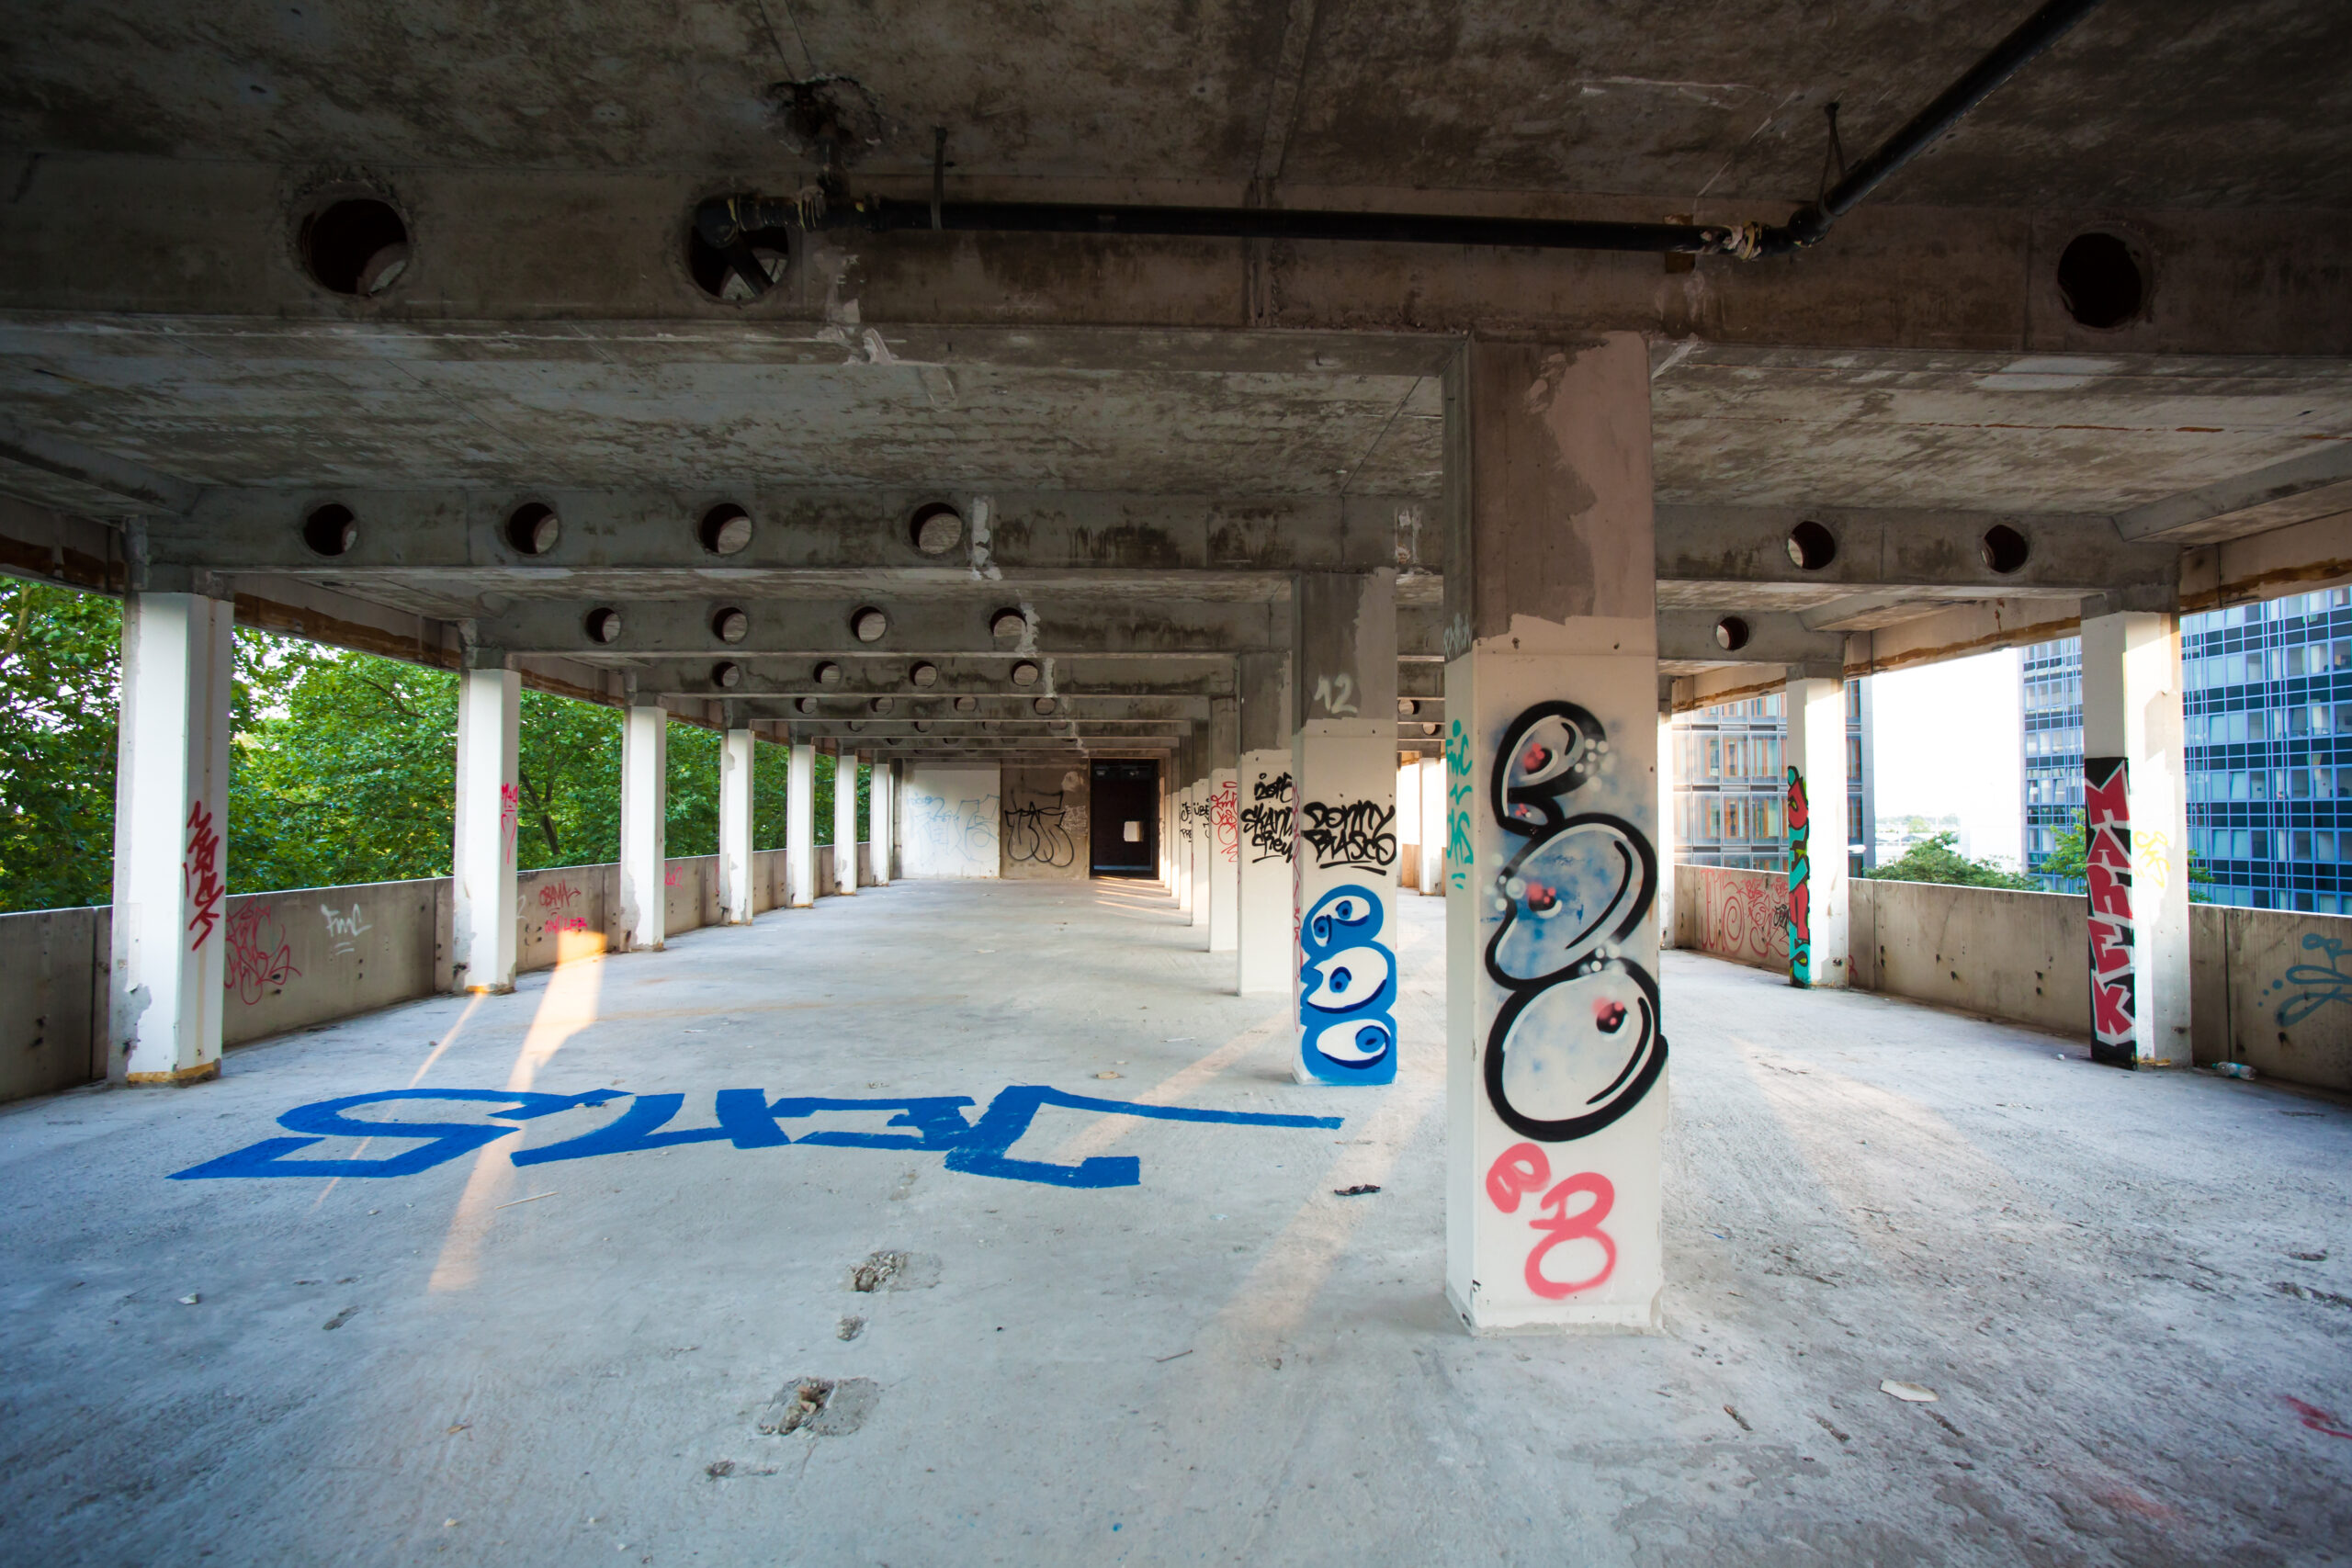 Graffiti an den Wänden eines verlassenen Gebäudes. Kreative Kunstwerke inmitten des Verfalls.